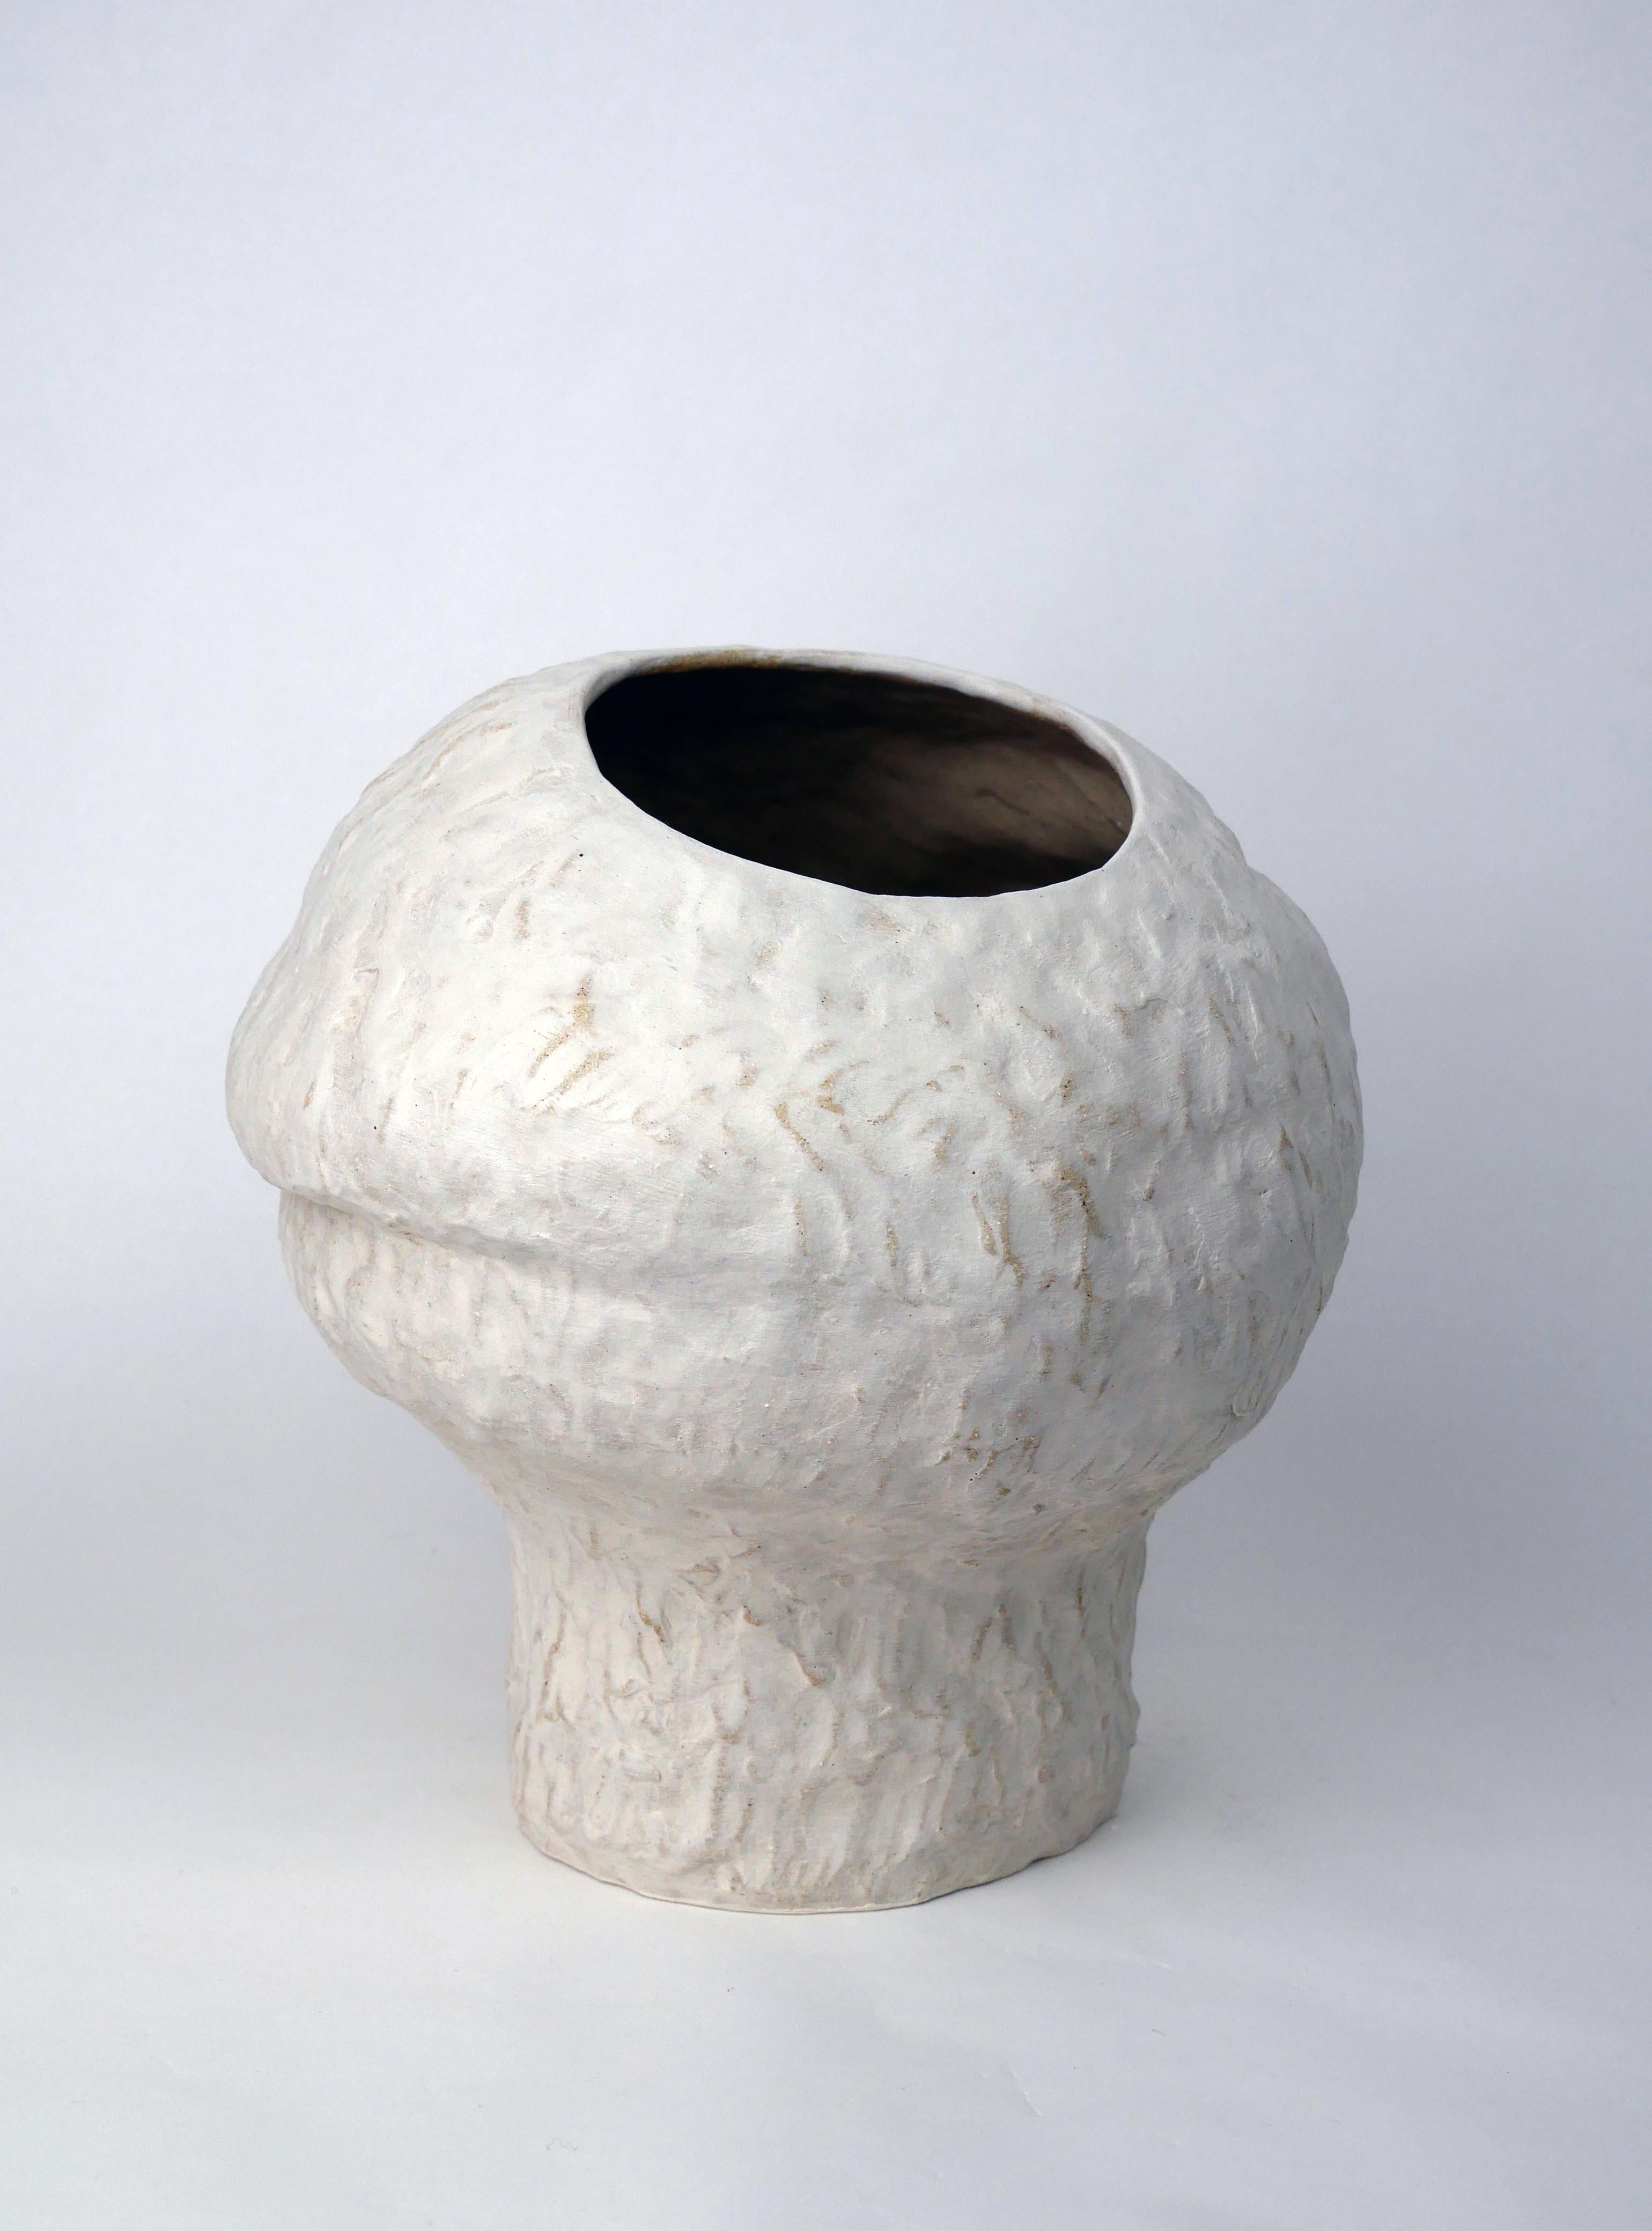 Vase aus weißem Glas, engobiert und umwickelt, 2022
Vase étanche, émaillé à l'intérieur
Einzigartiges Modell, das nach dem Prinzip der Modellierung hergestellt